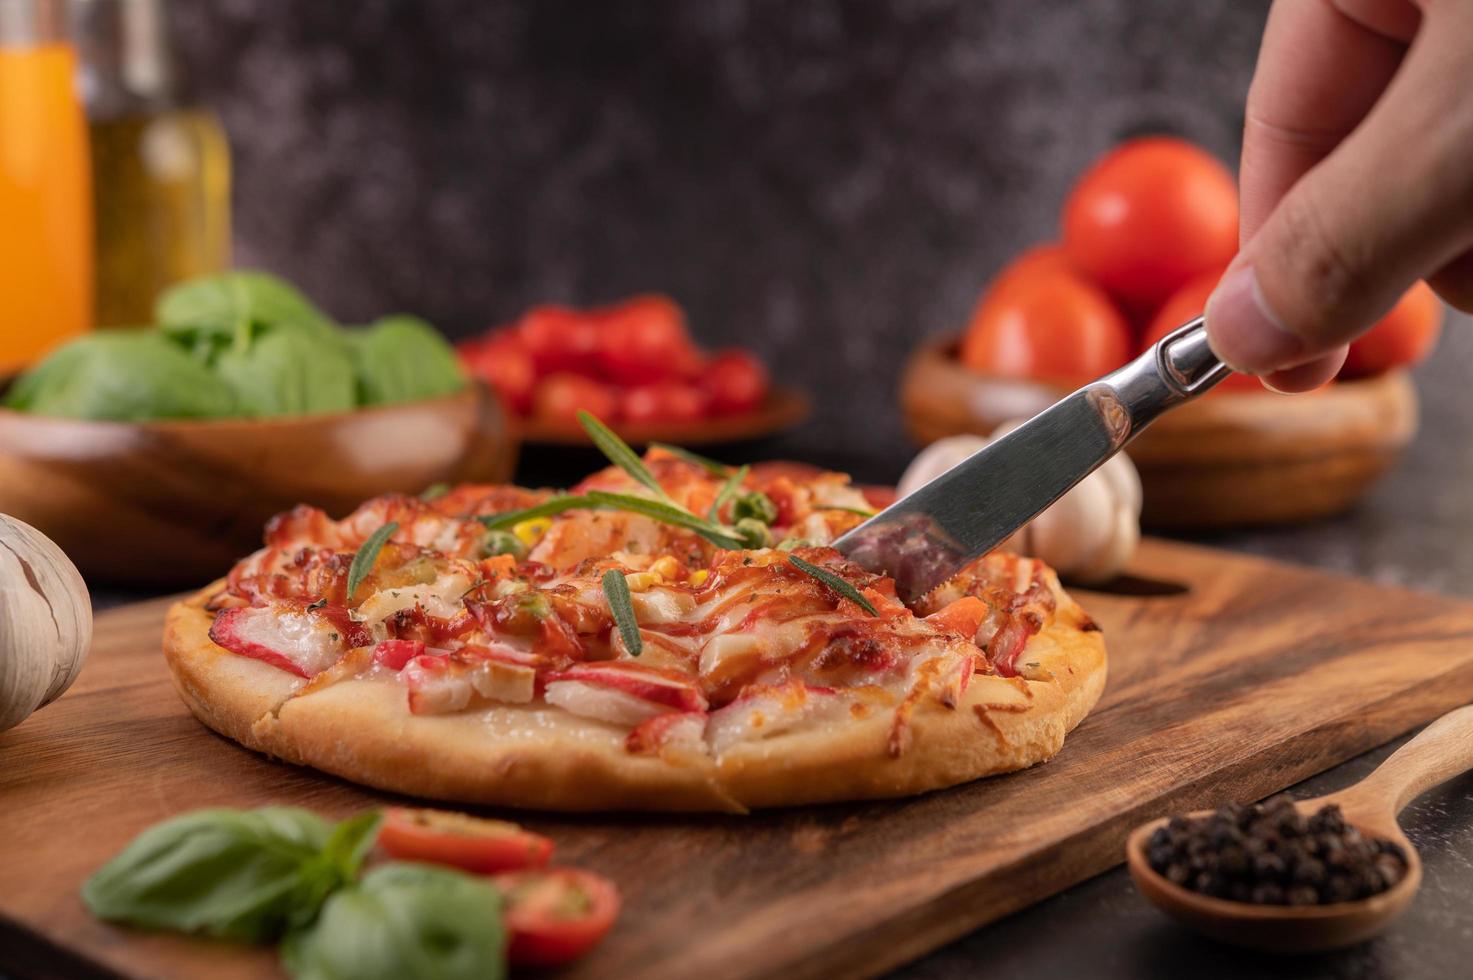 pizza caseira com ingredientes foto